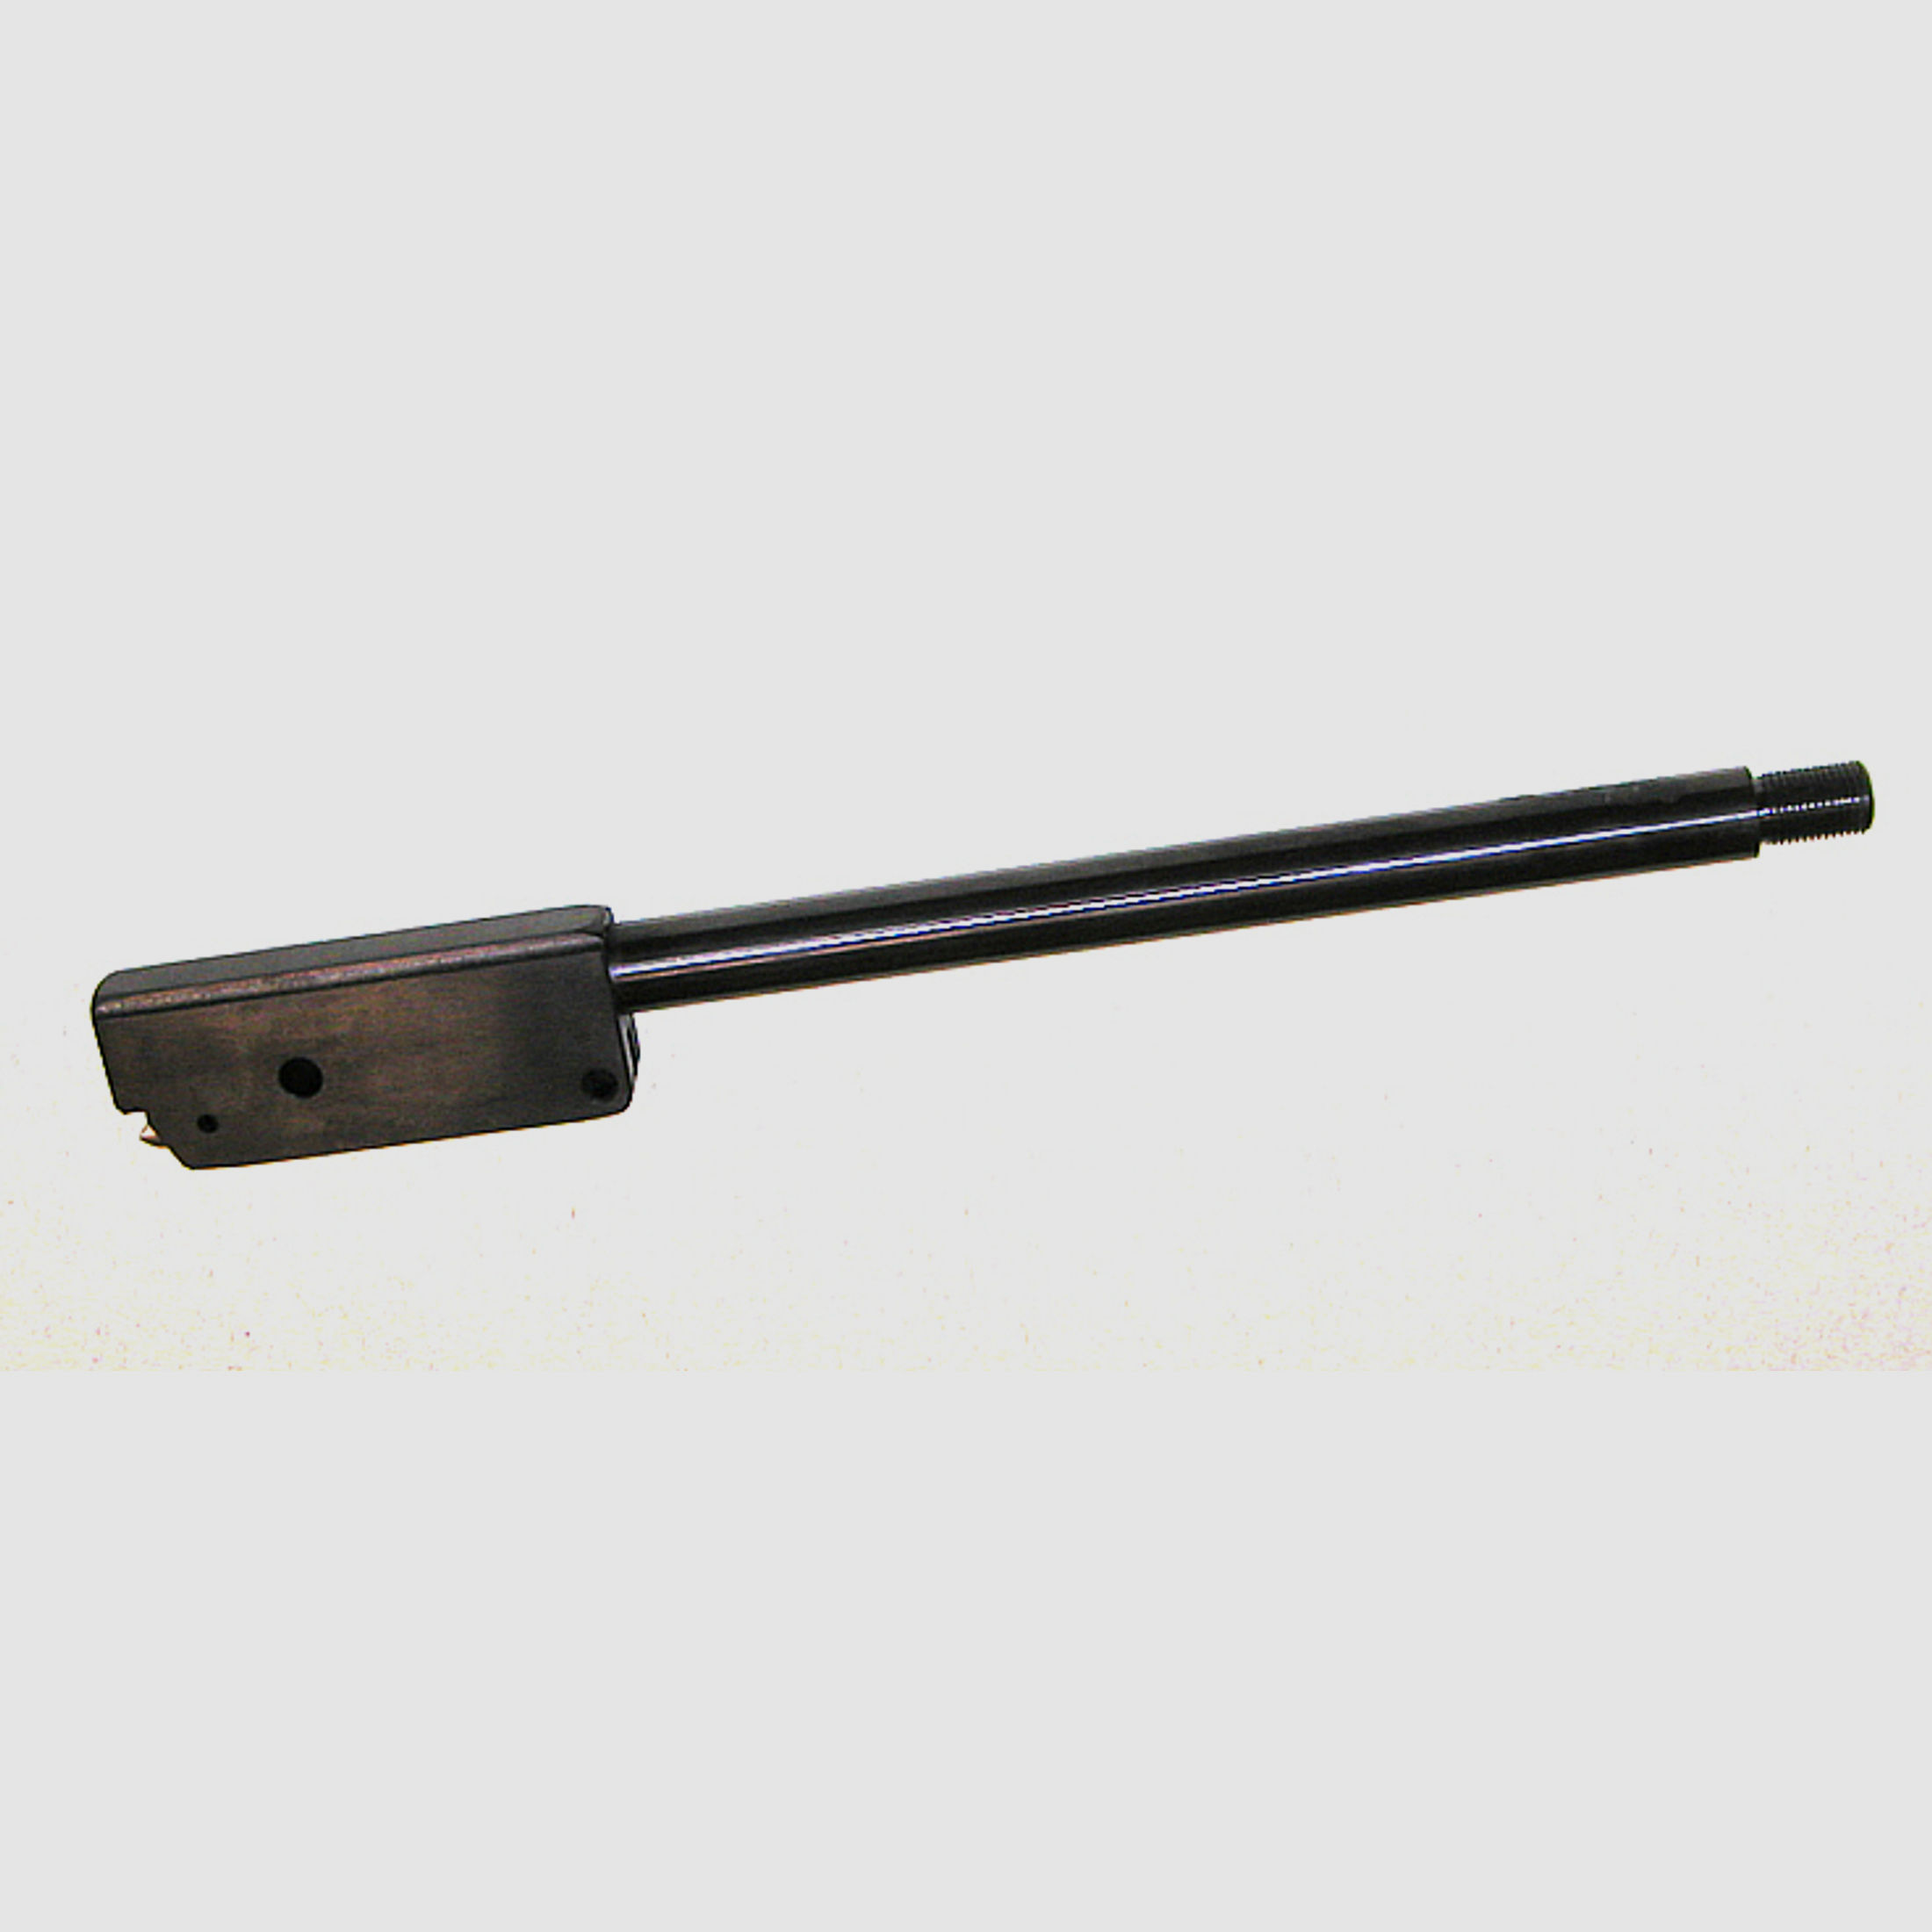 Wechsellauf mit SchalldĂ¤mpfergewinde 31 cm fĂĽr Luftgewehr Weihrauch HW 80 Kaliber 6,35 mm (P18)